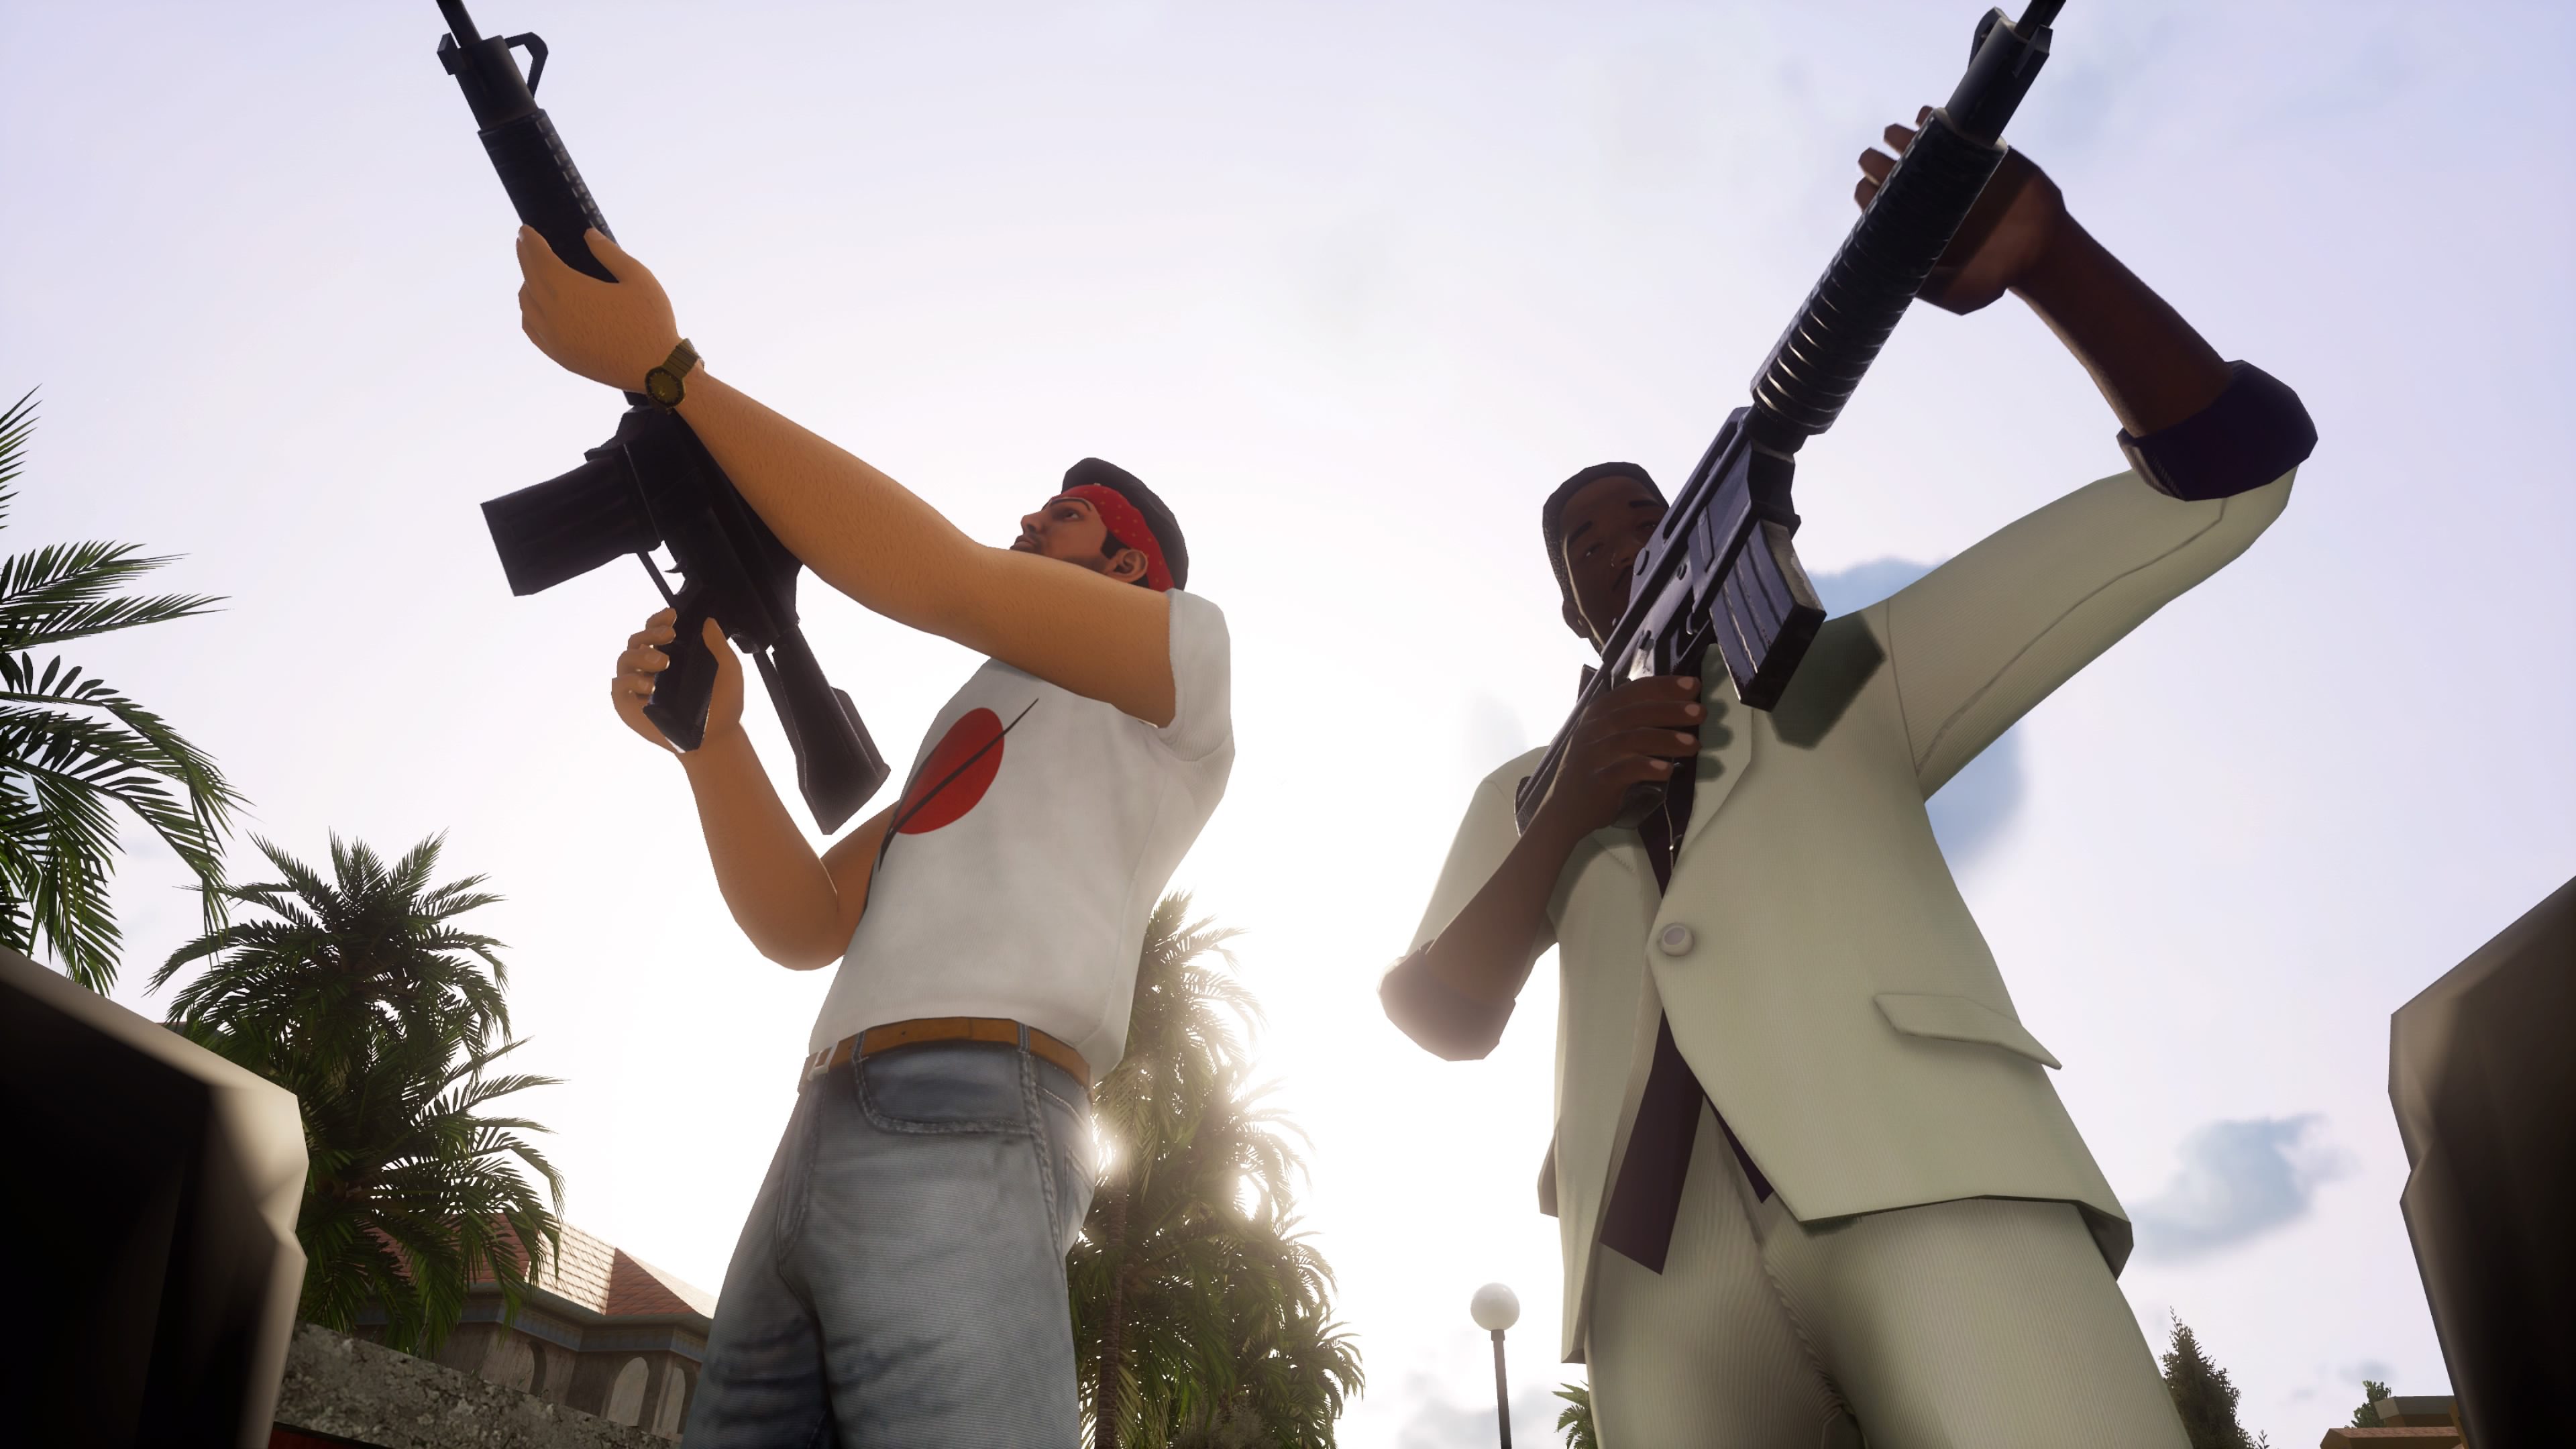 GTA: San Andreas “2021 Edition” Is the Remake Rockstar Has No